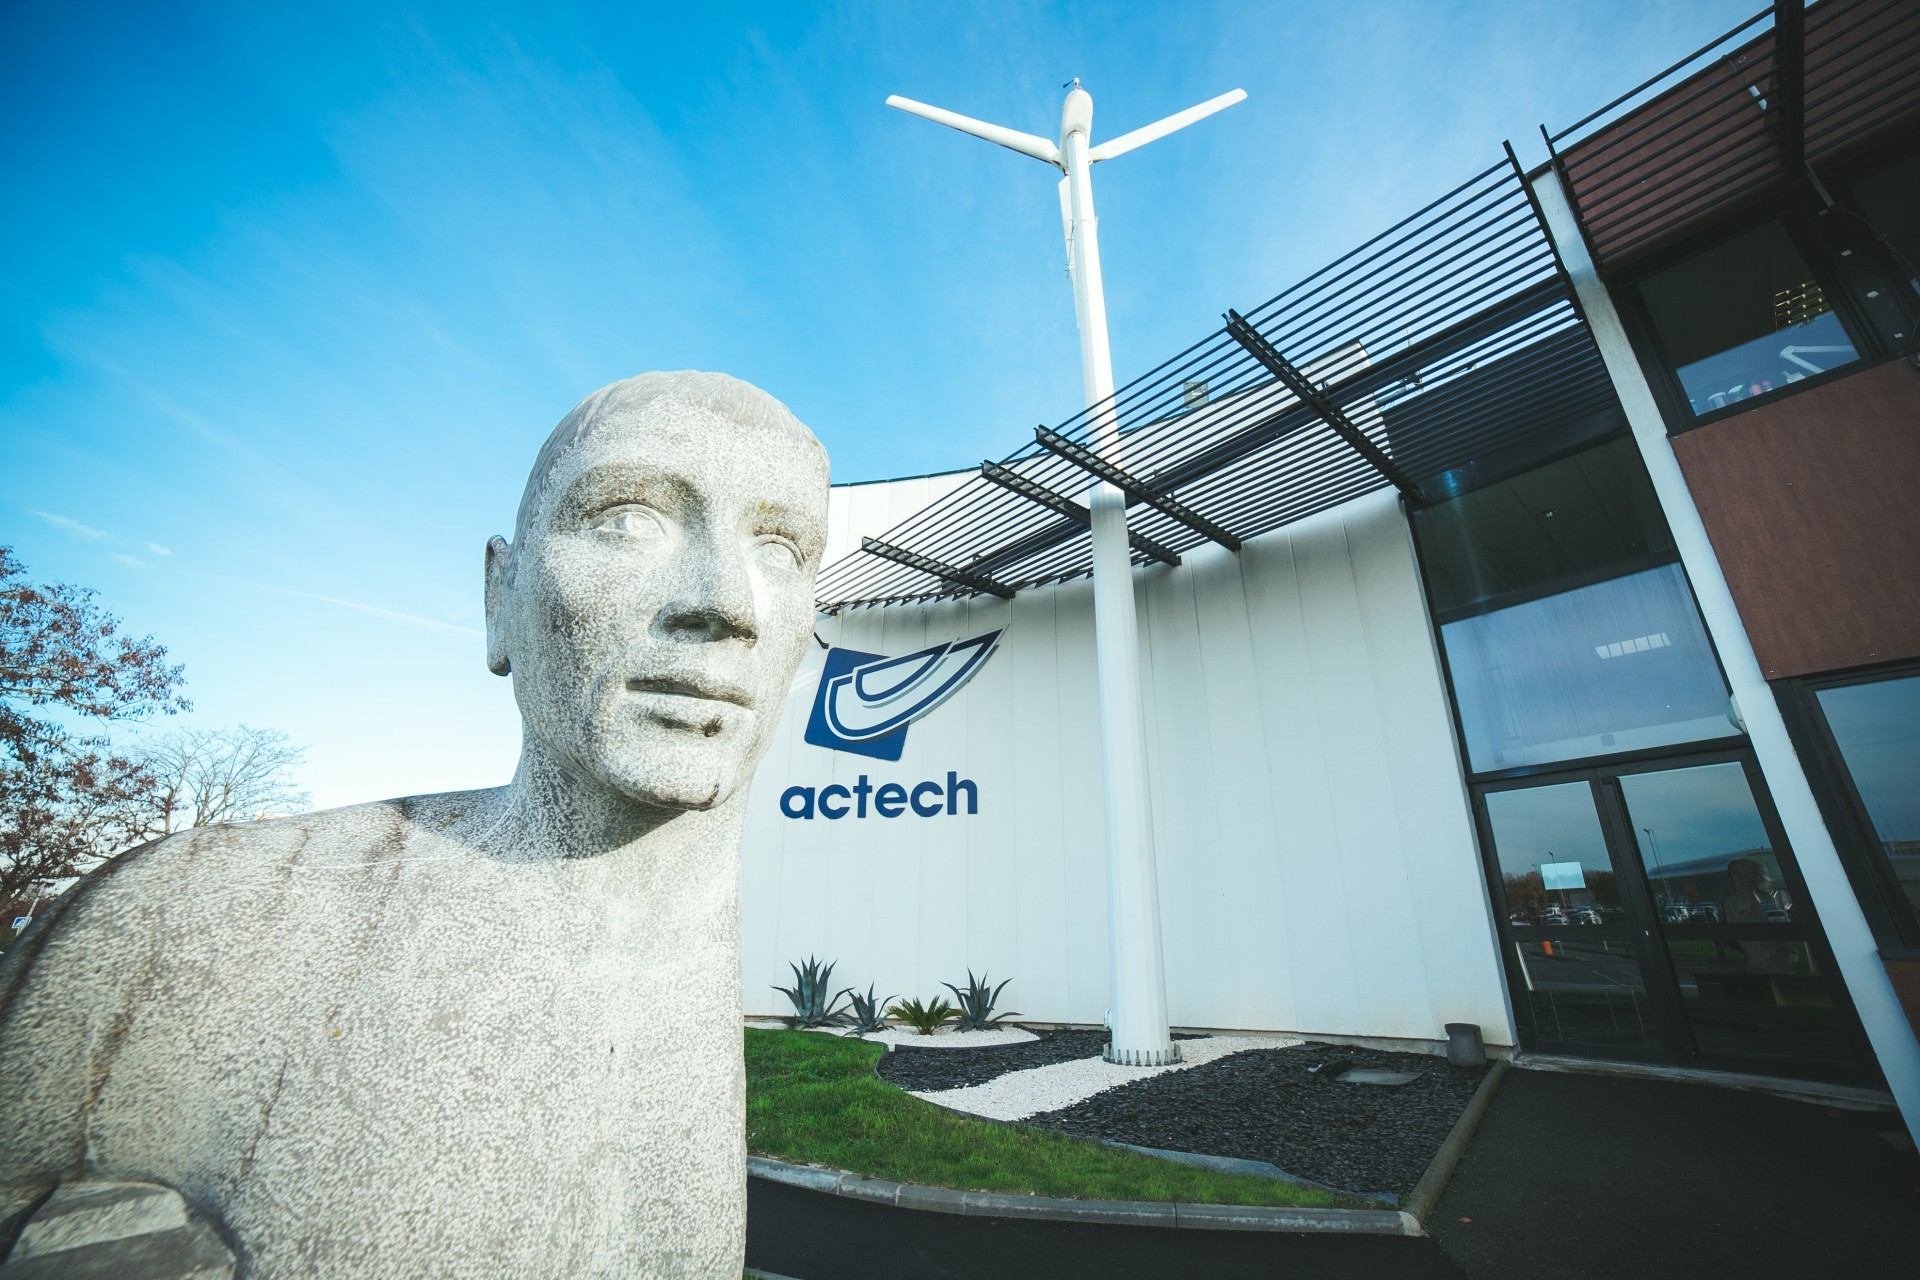 Actech innovation - actech innovation - angers - Bureau d'études en ingénierie mécanique - bureau d'études angers / 